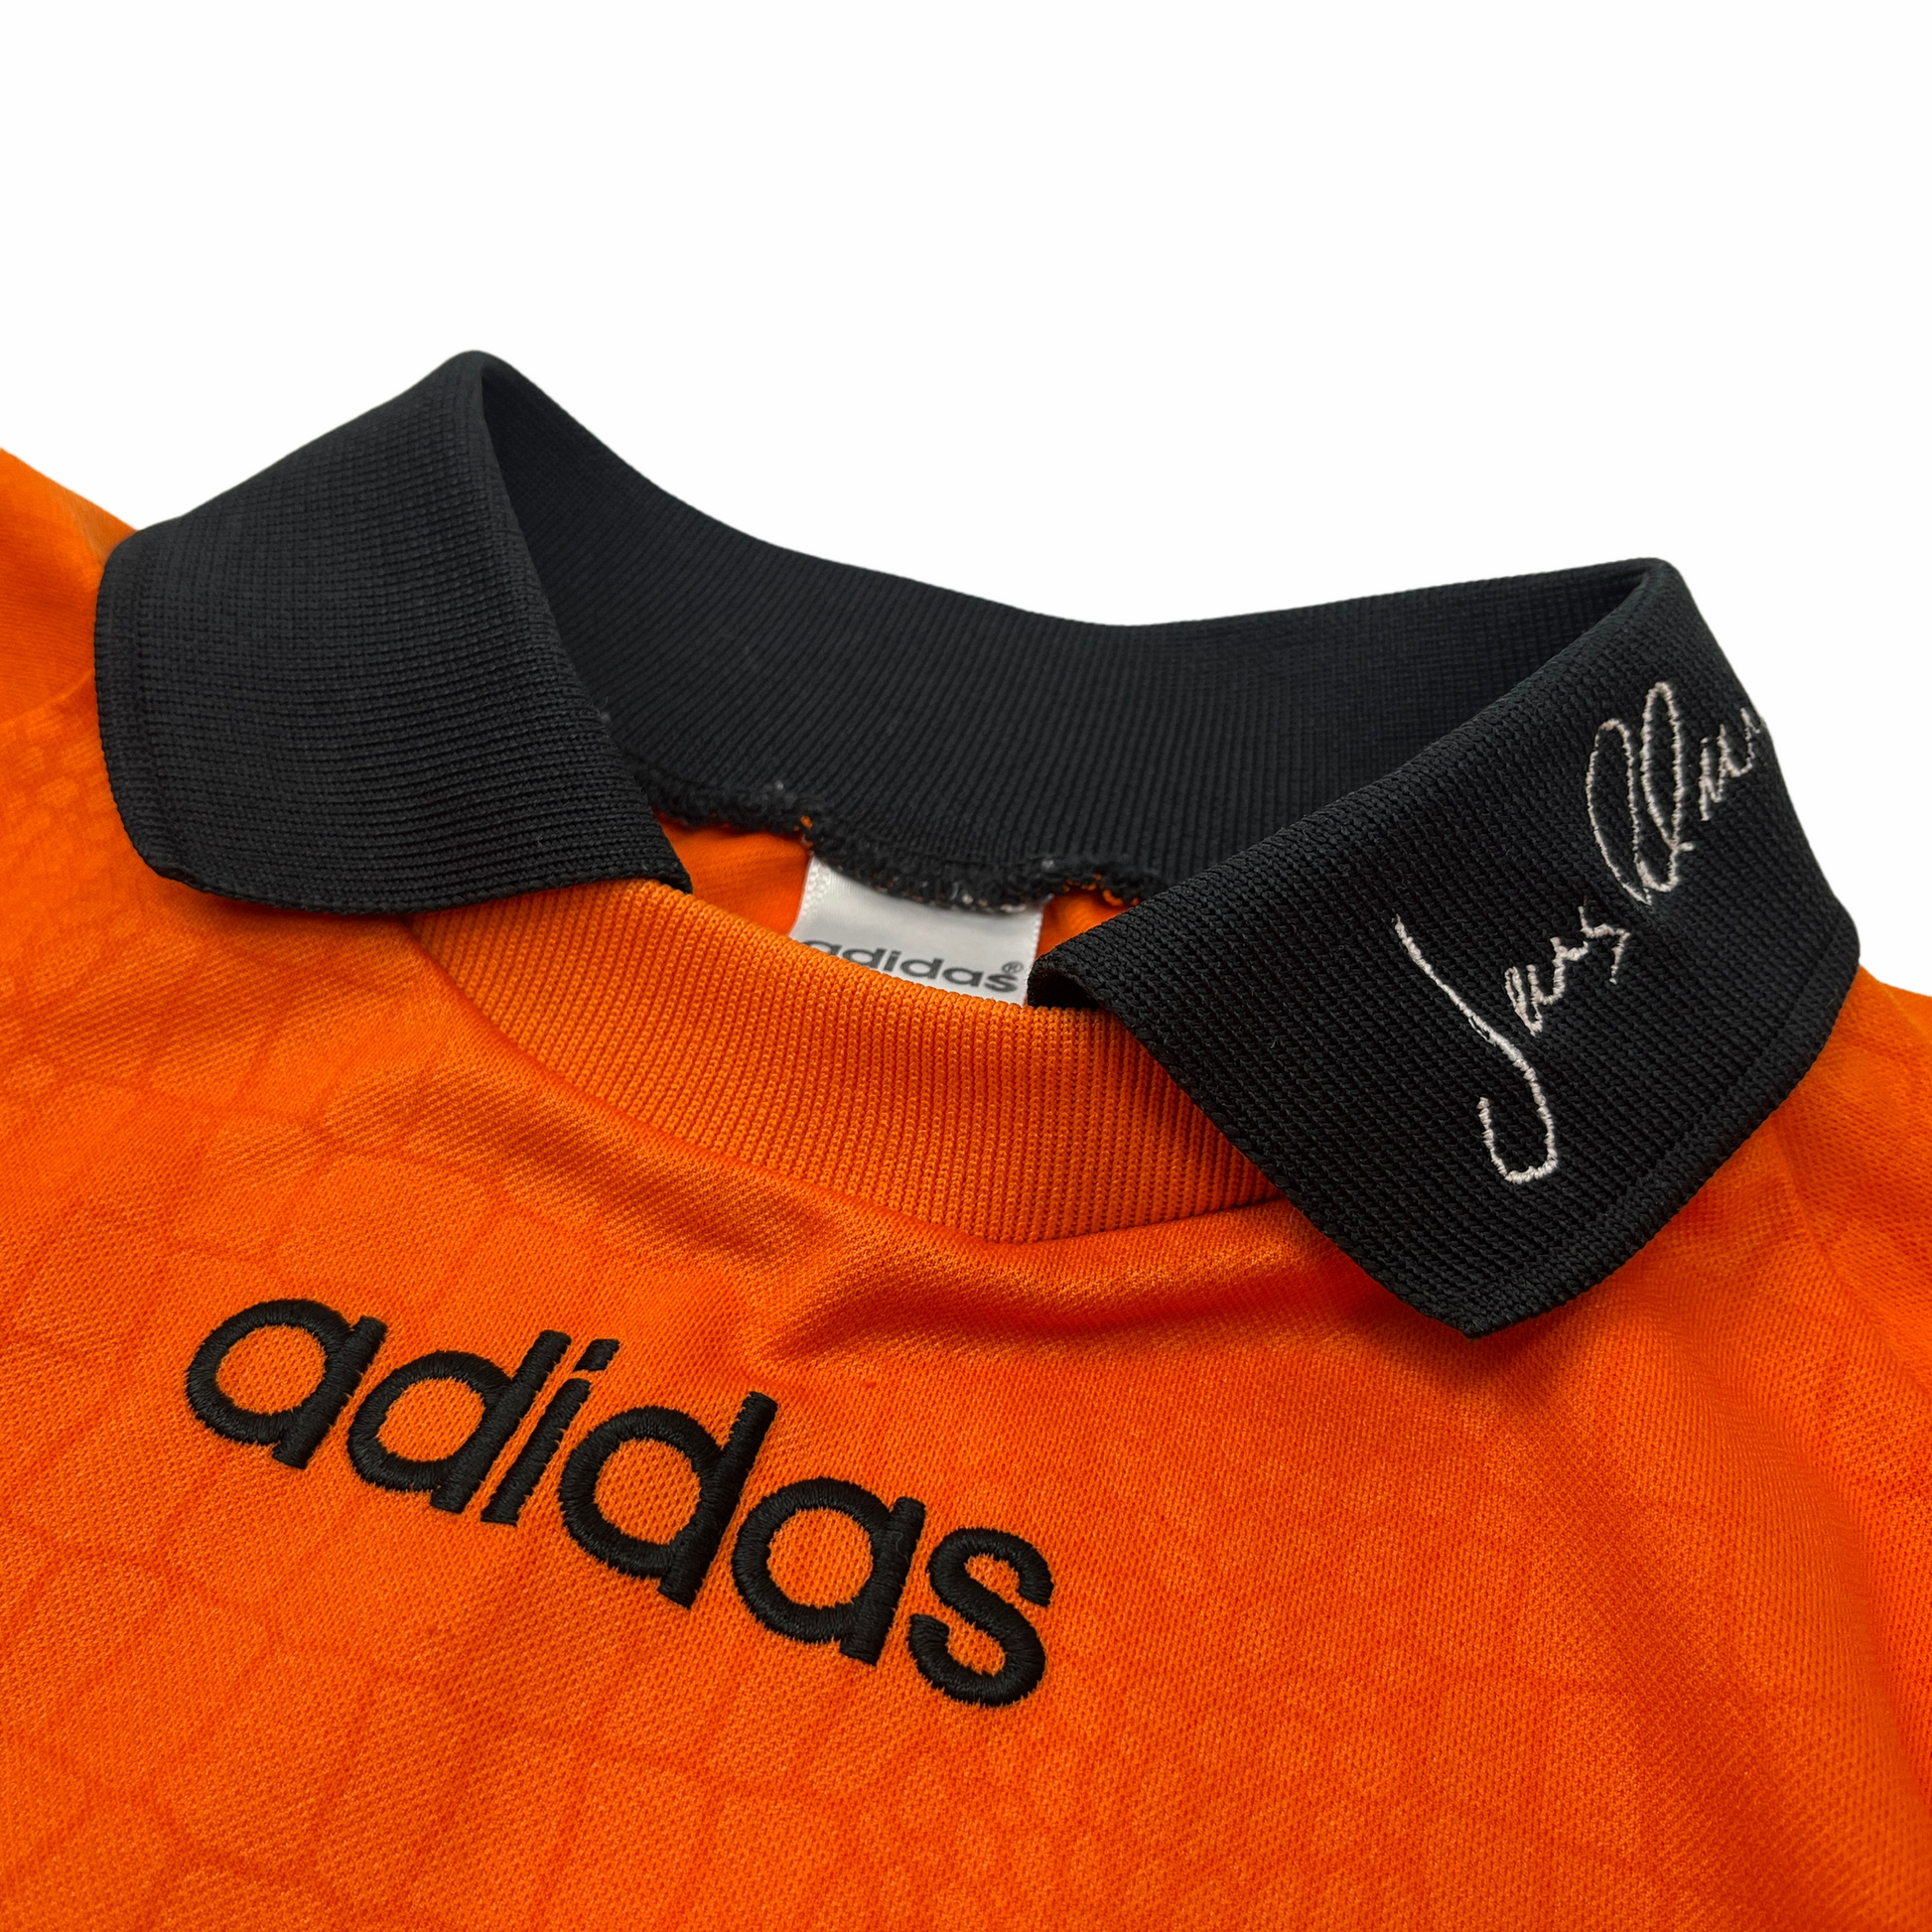 0806 Adidas Vintage Jens Lehman Goalkeeper Jersey – PAUL'S FANSHOP